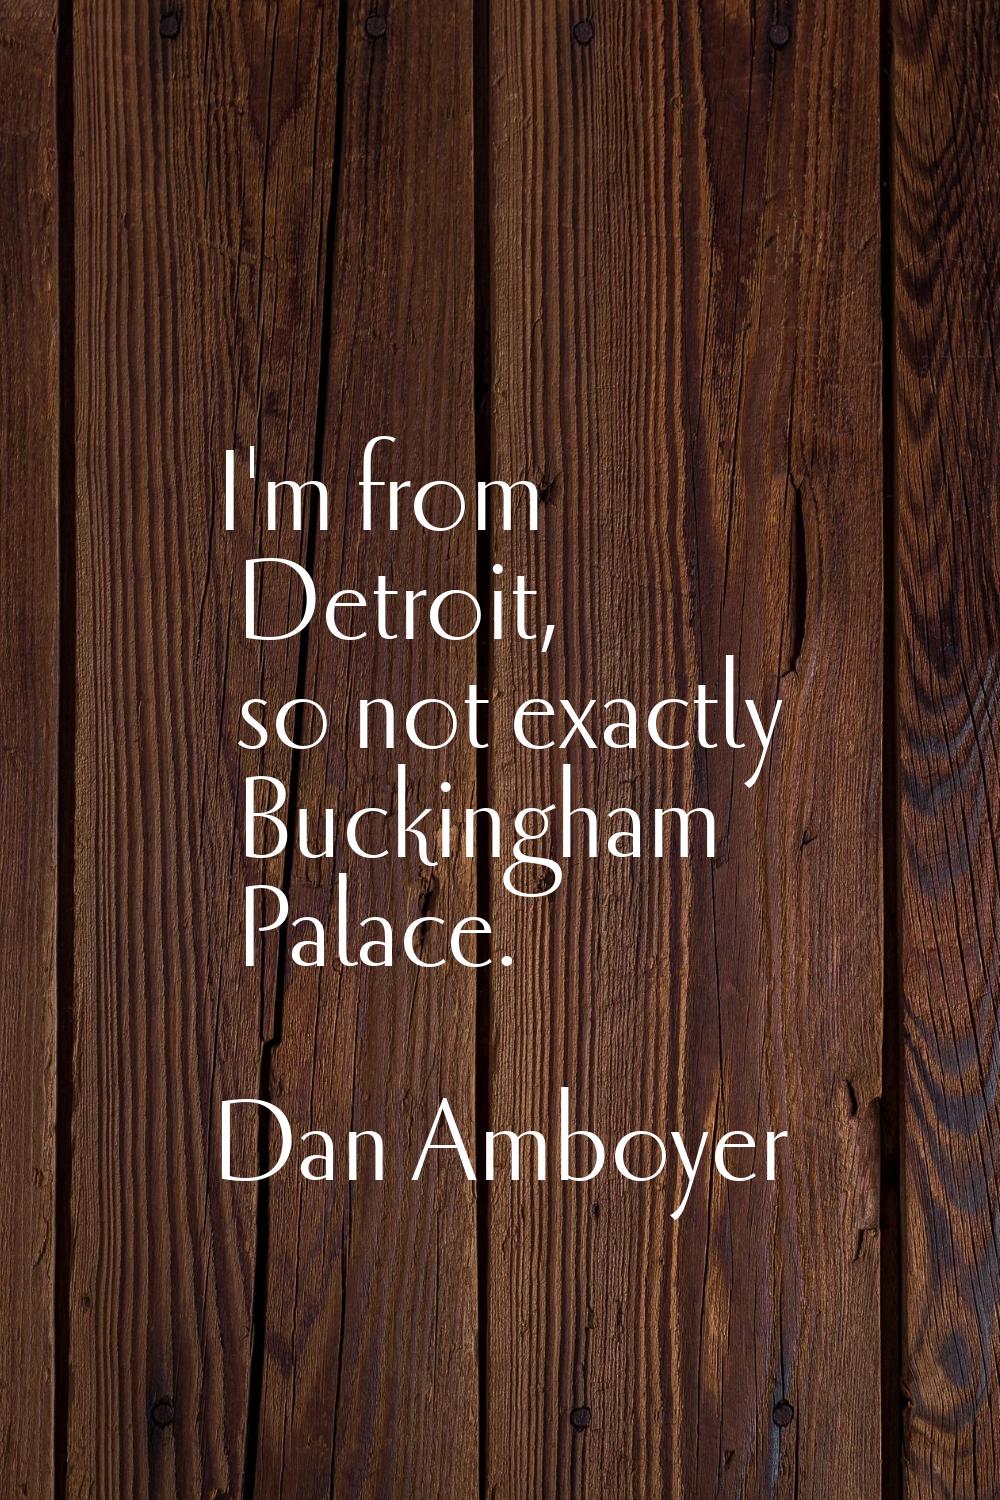 I'm from Detroit, so not exactly Buckingham Palace.